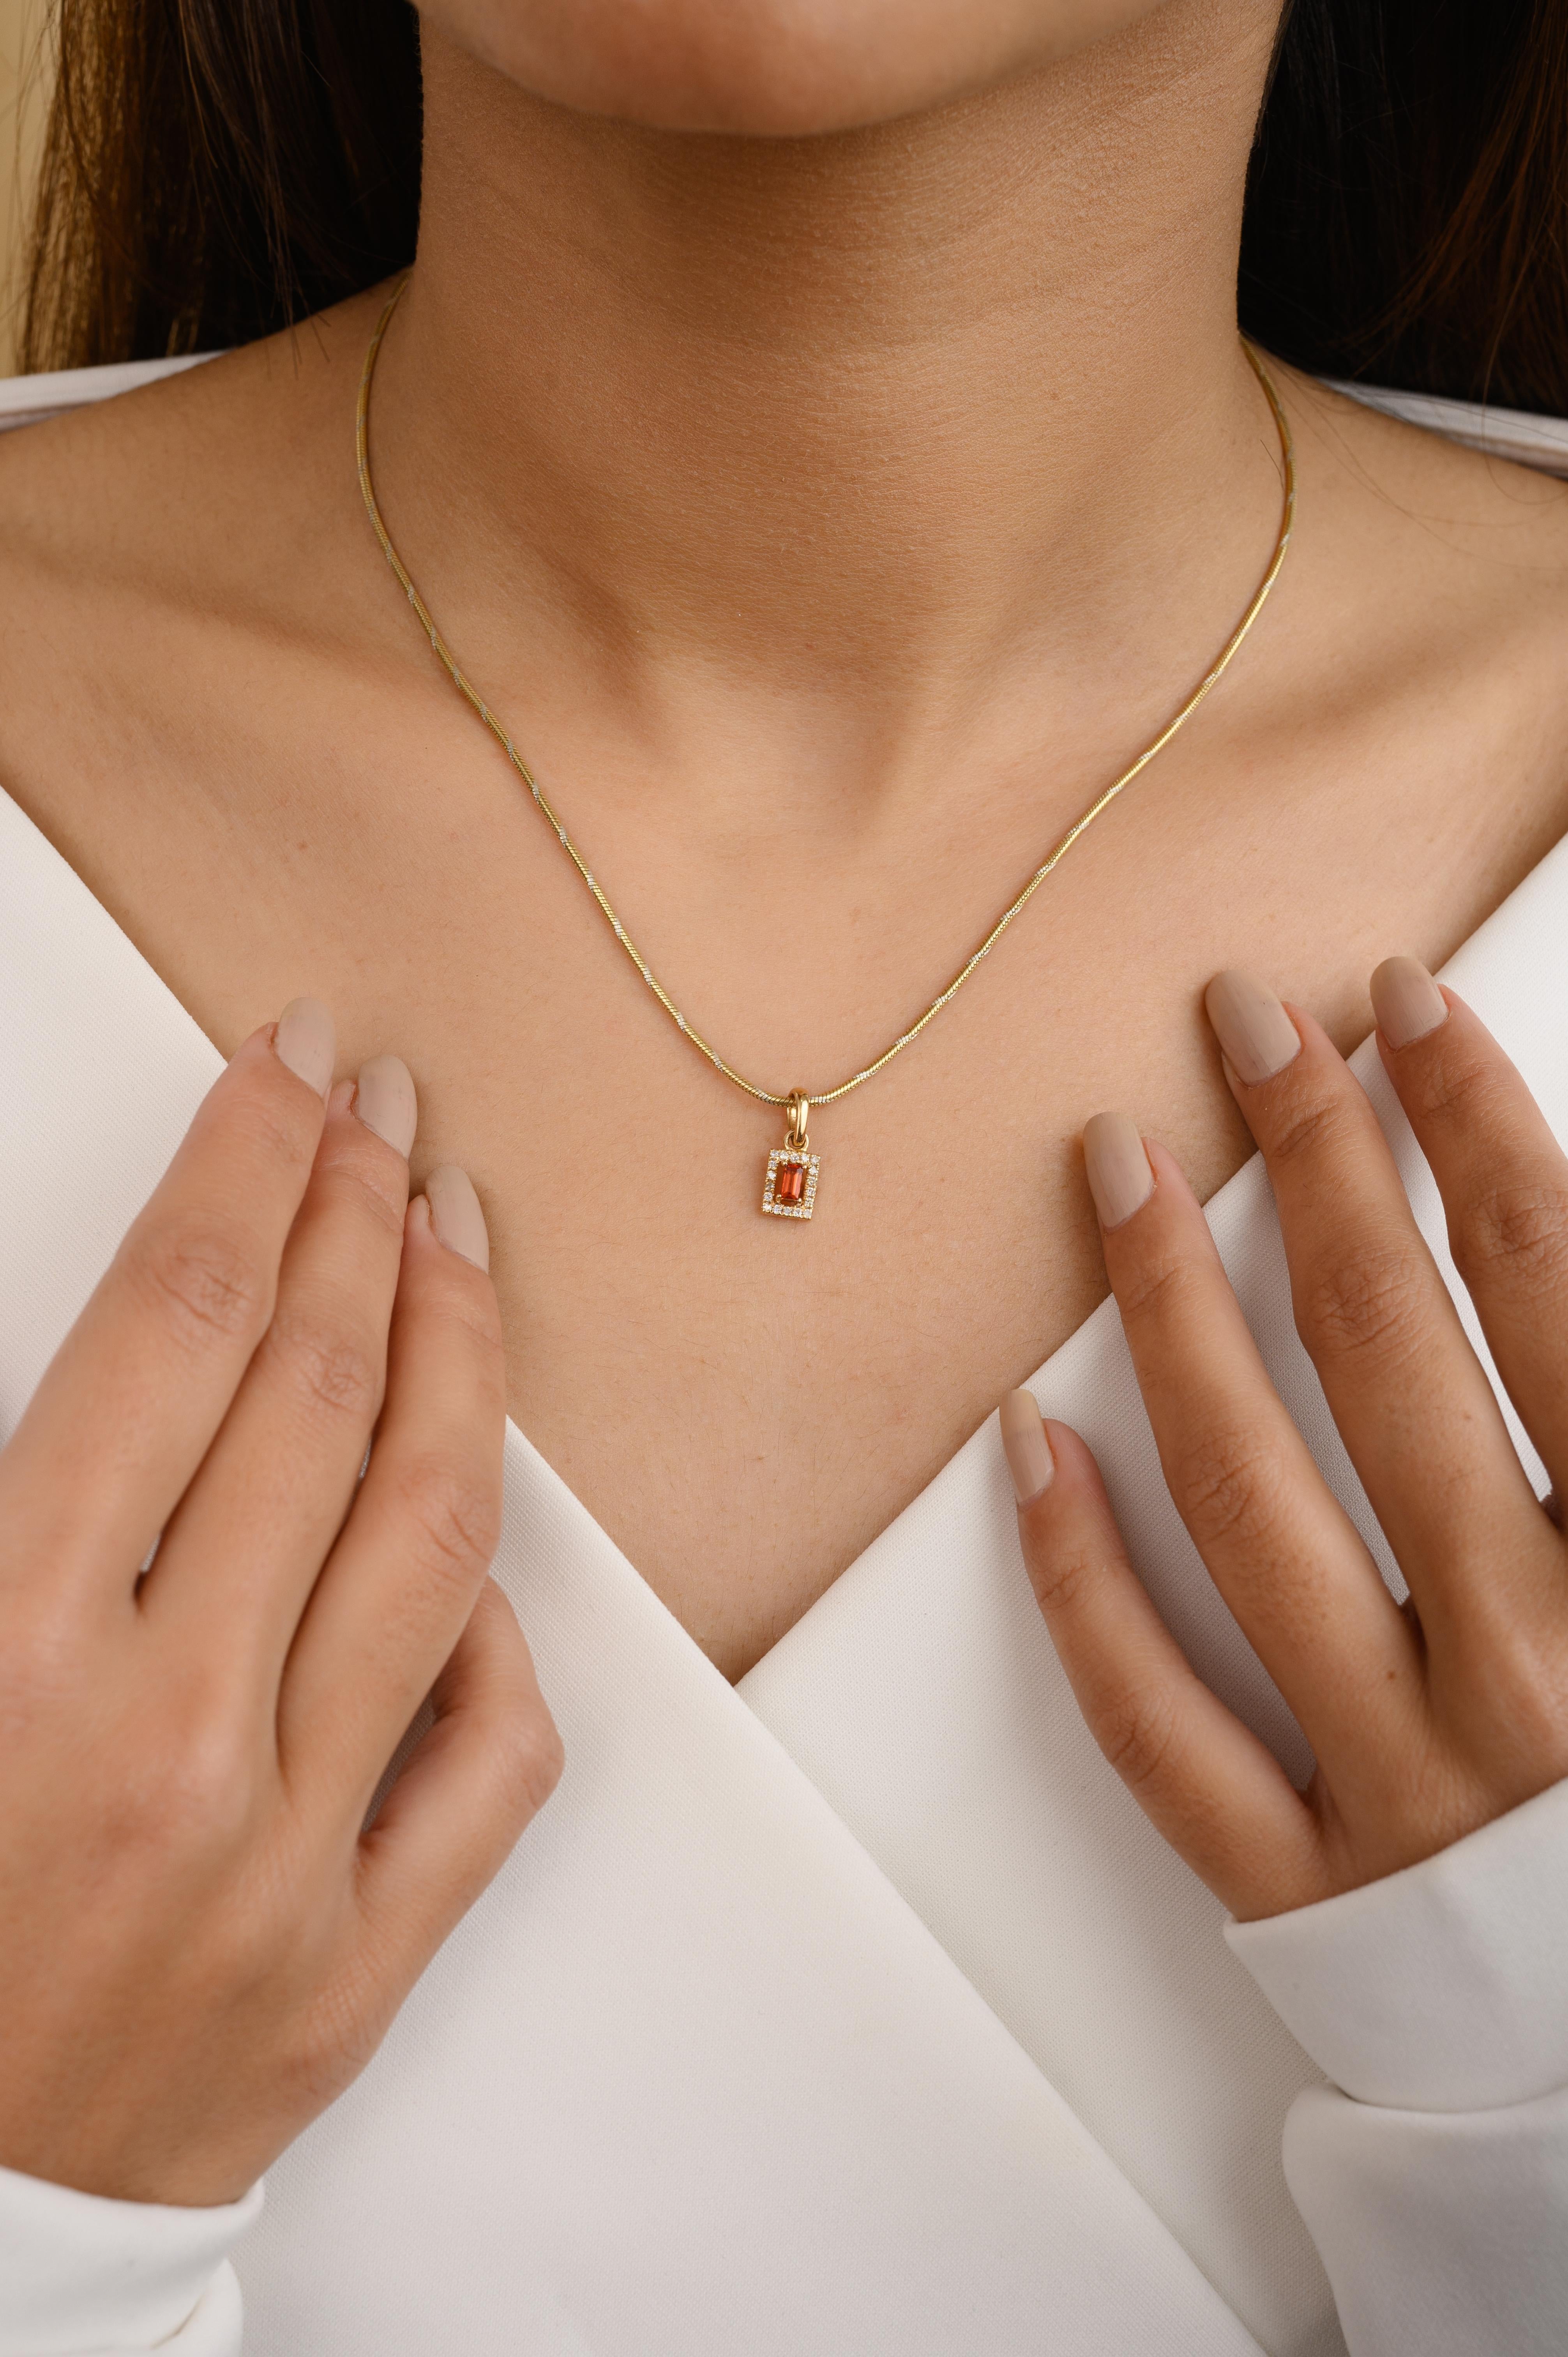 Zierlicher Baguette-Orange-Saphir-Diamant-Halo-Anhänger aus 14 Karat Gold, besetzt mit einem Saphir im Baguetteschliff. Dieses atemberaubende Schmuckstück wertet einen Freizeitlook oder ein elegantes Outfit sofort auf. 
Saphir fördert die